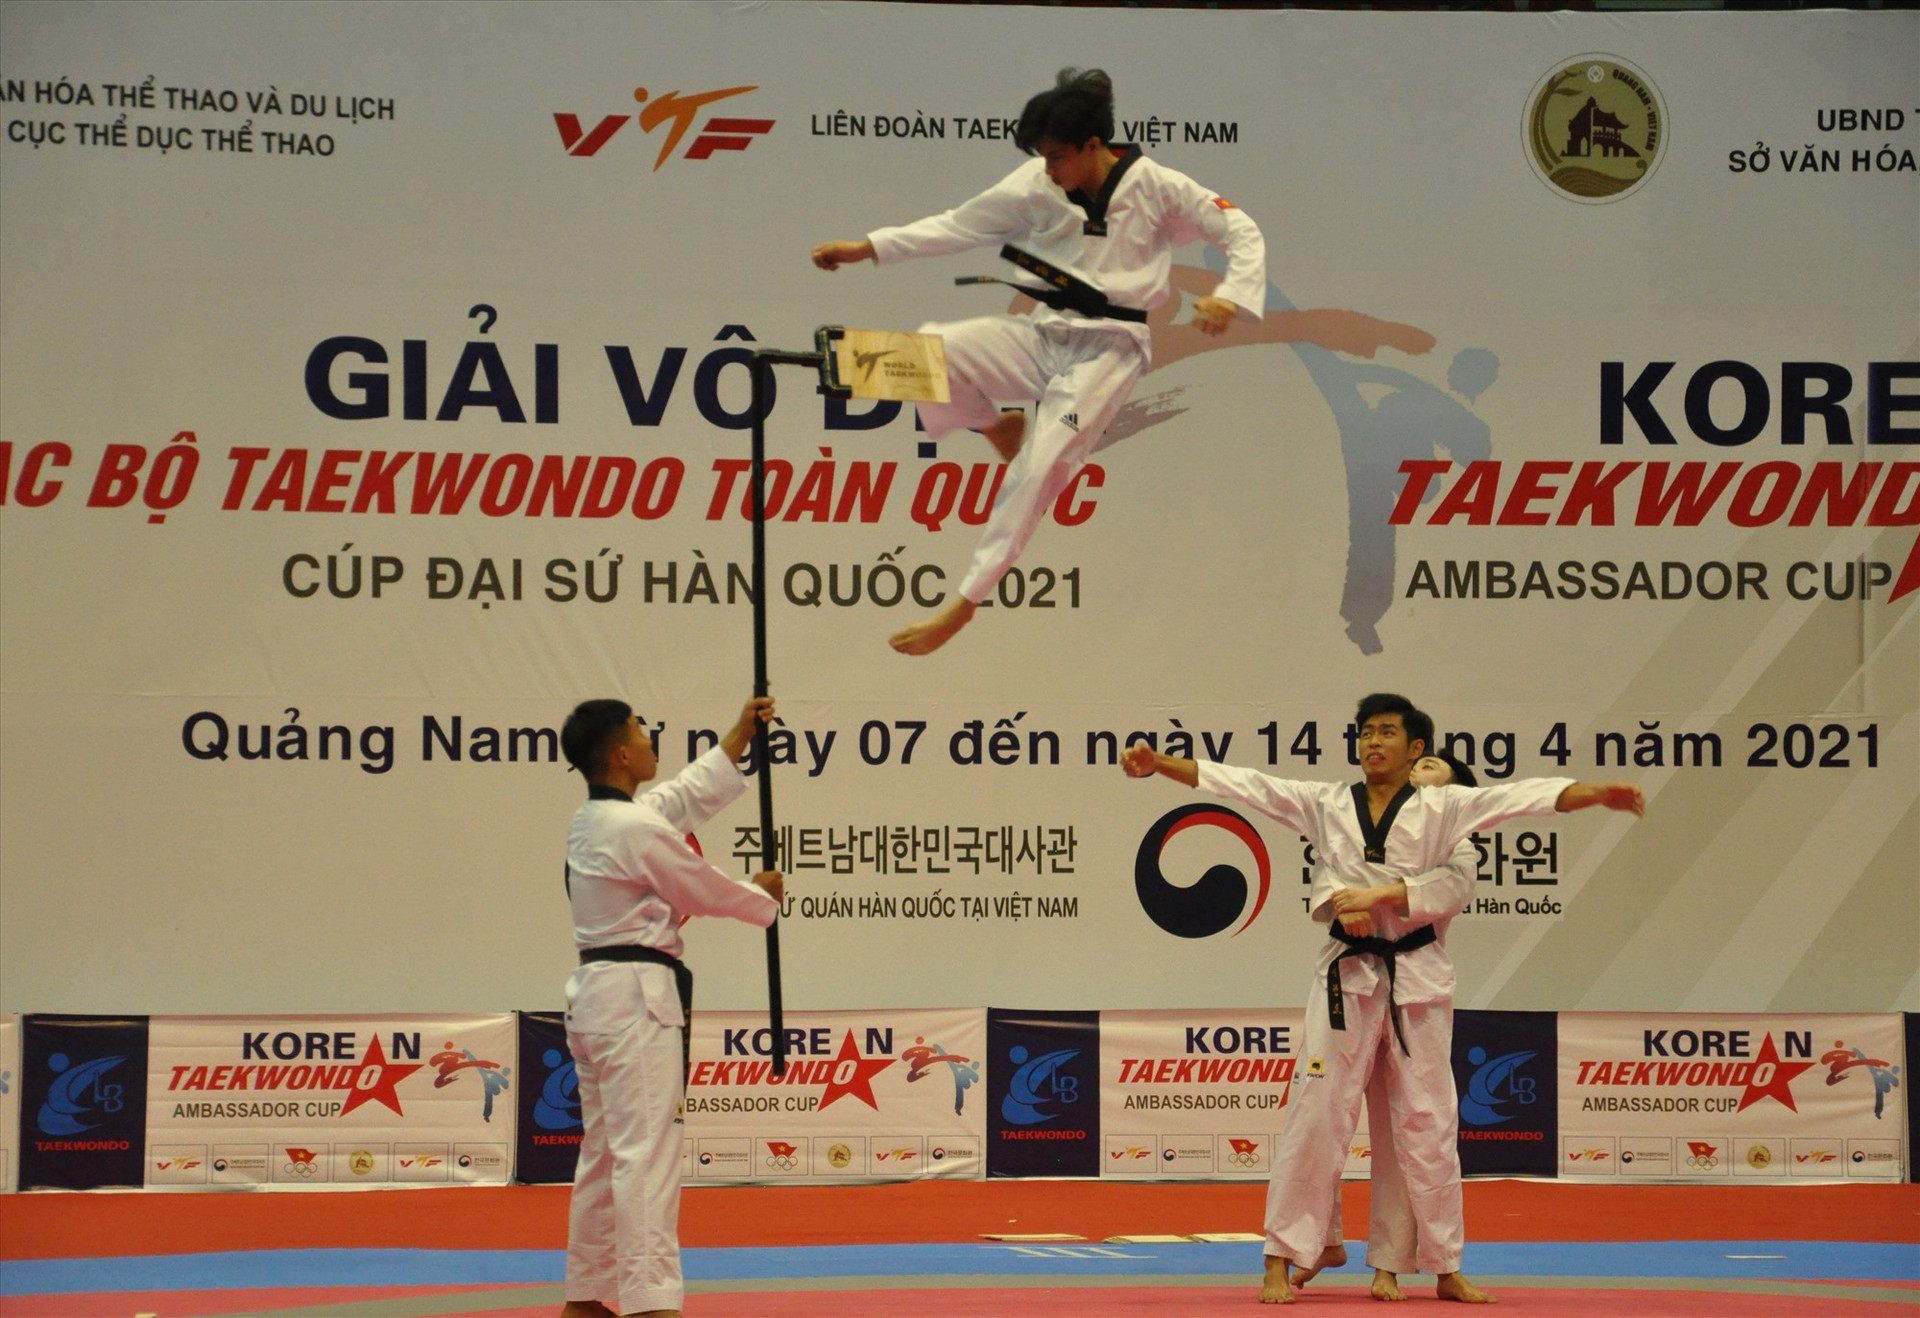 Một pha biểu diễn tại Giải vô địch các câu lạc bộ Taekwondo toàn quốc năm 2021 tổ chức tại Quảng Nam. Ảnh: T.VY